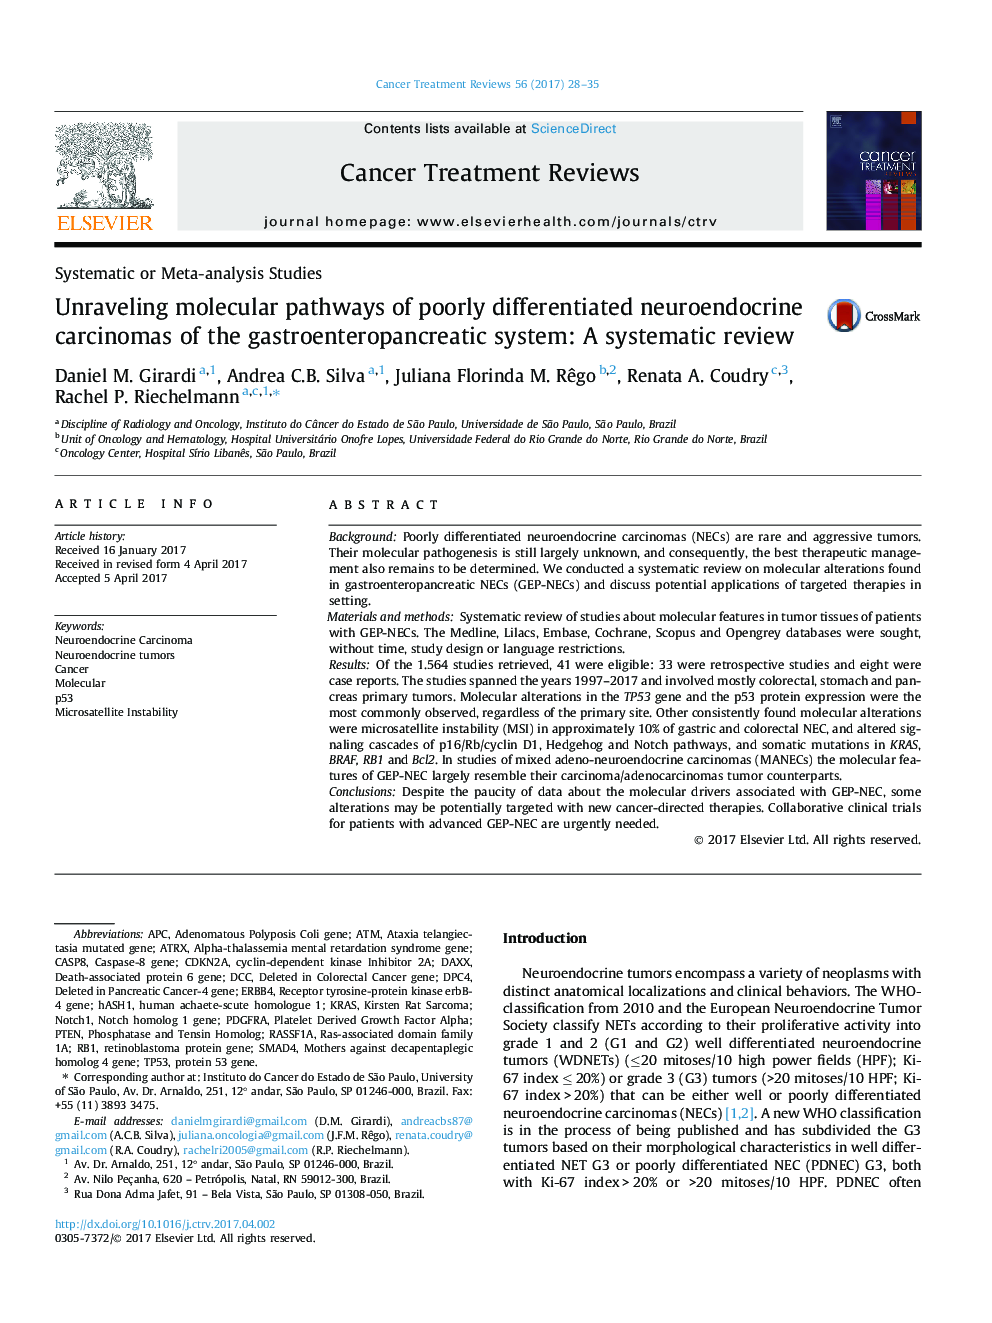 ردیابی مسیرهای مولکولی کارسینومهای نروندوکریین ضعیف شده سیستم گوارش و مجاری تنفسی: یک بررسی سیستماتیک 